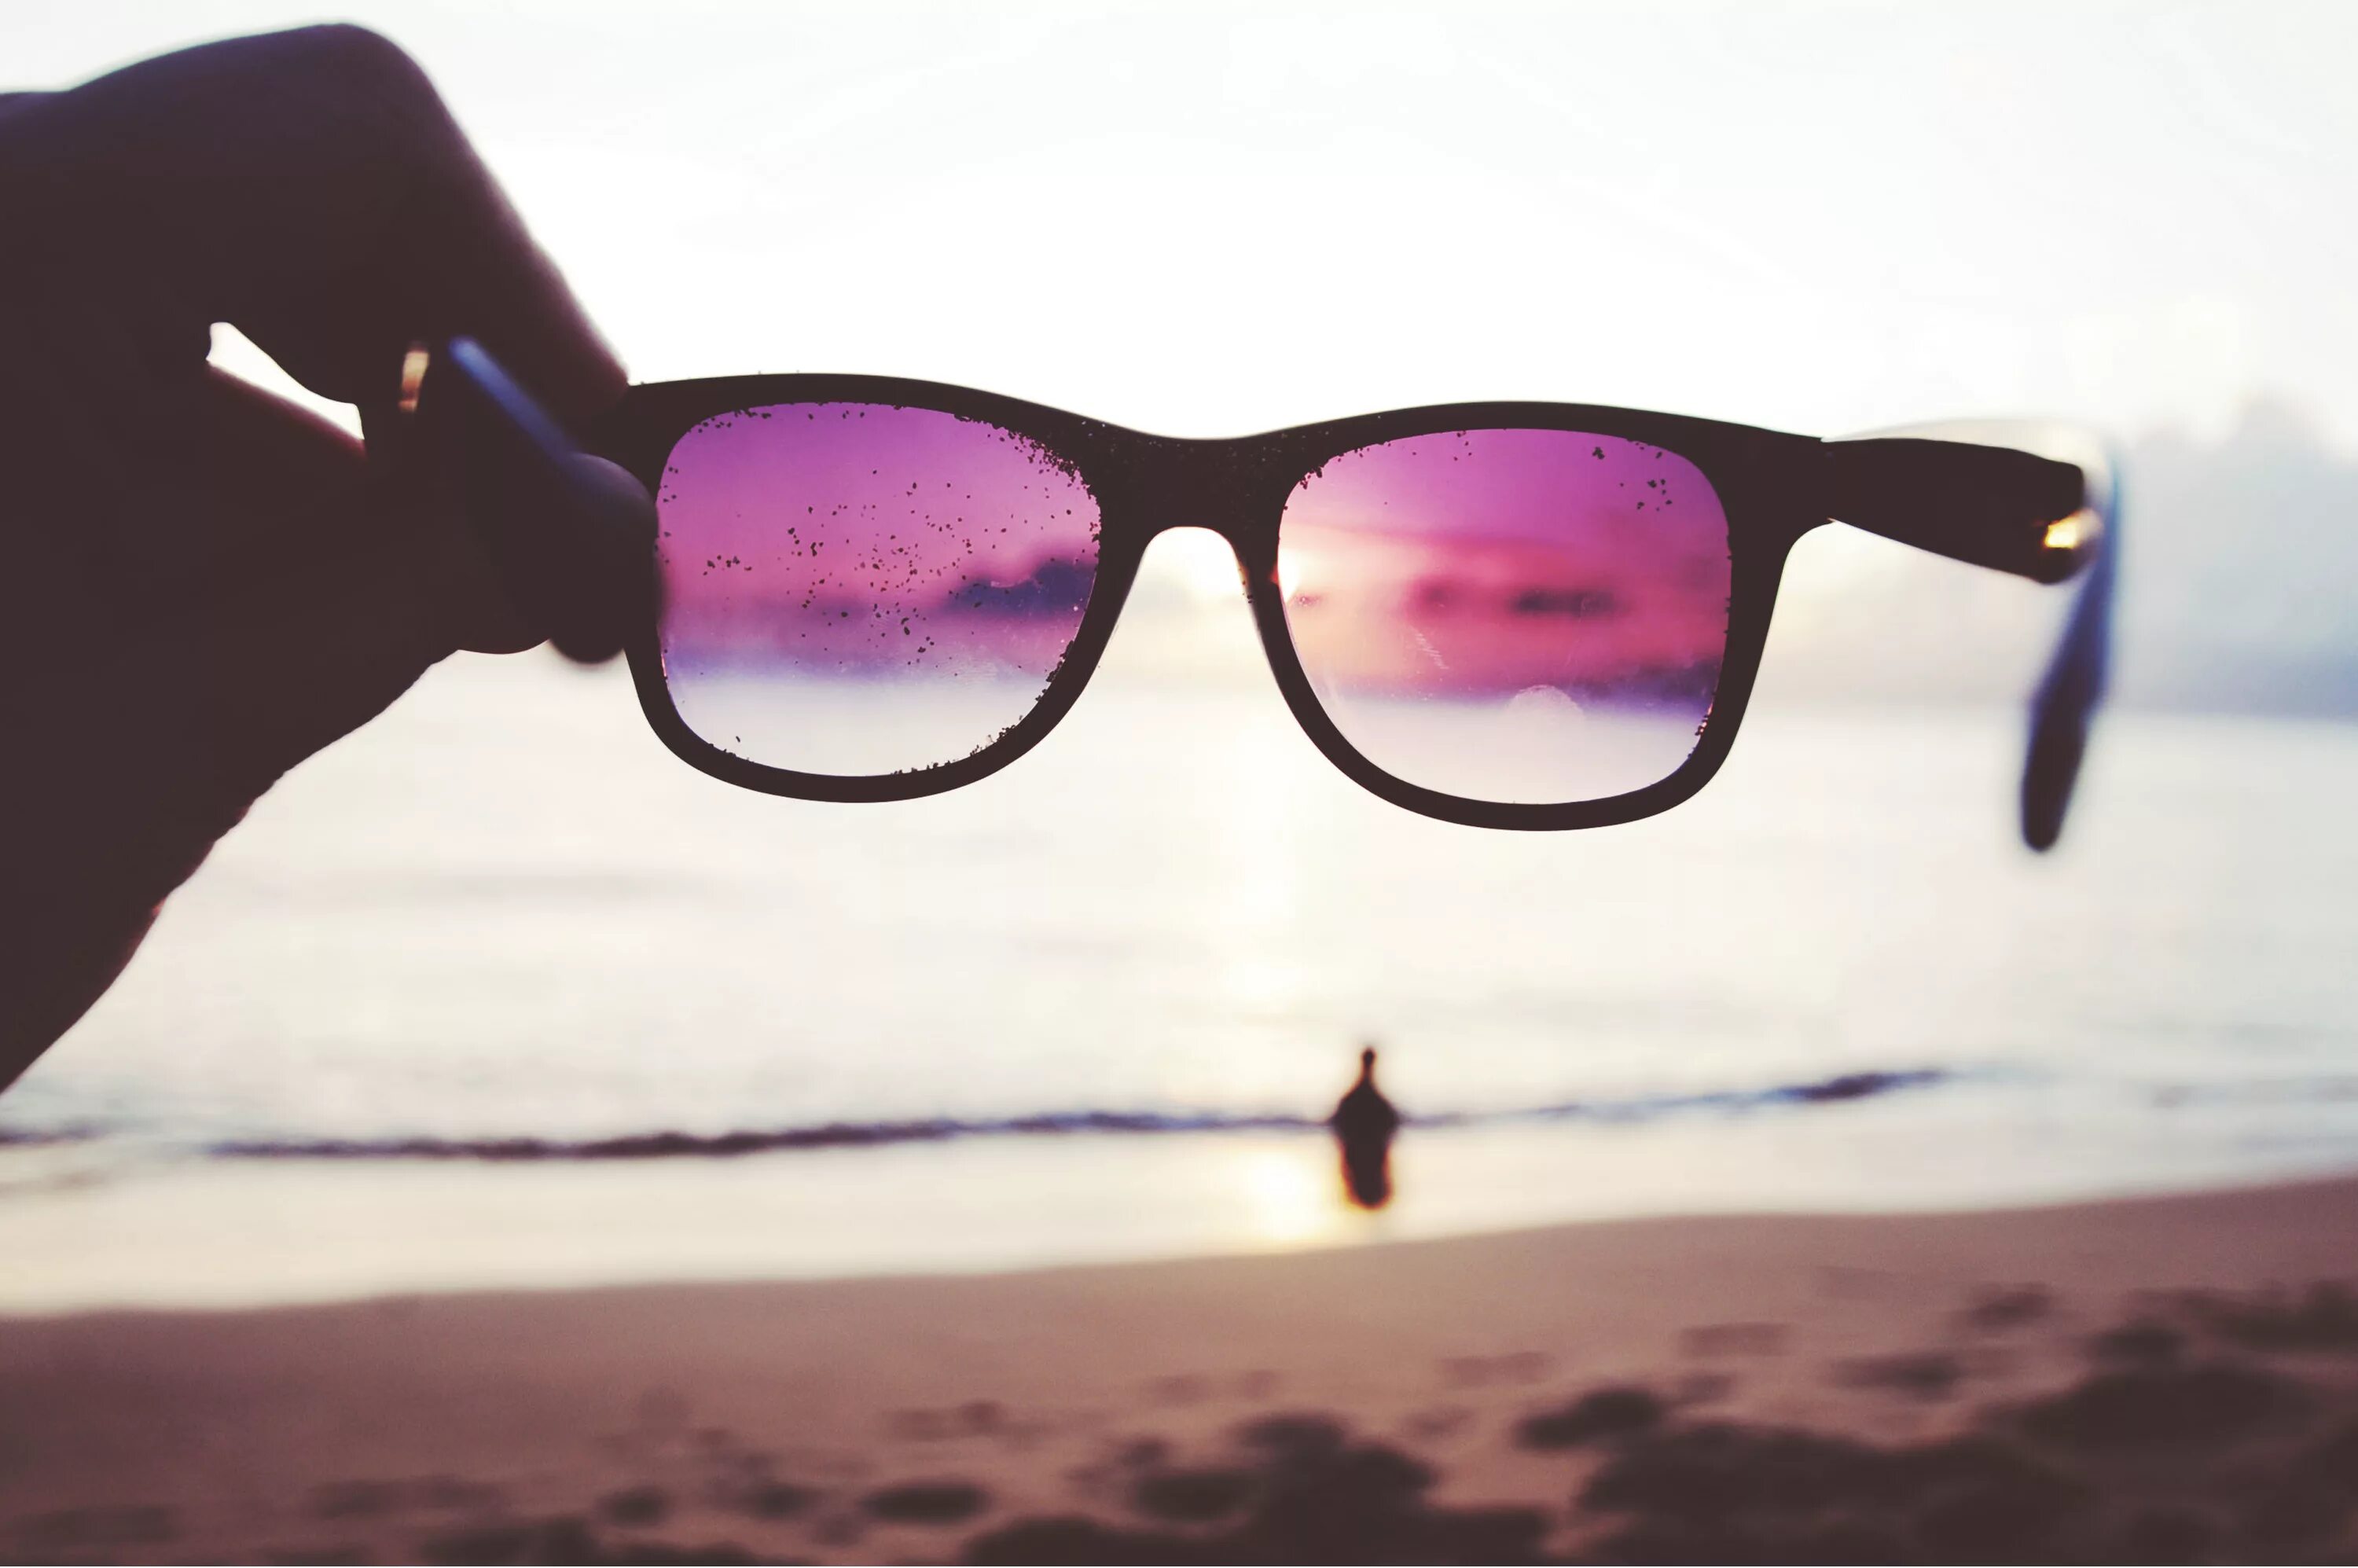 Летние очки. Лето в очках. В очках отражается море. Розовые очки на пляже. В розовых очках песня